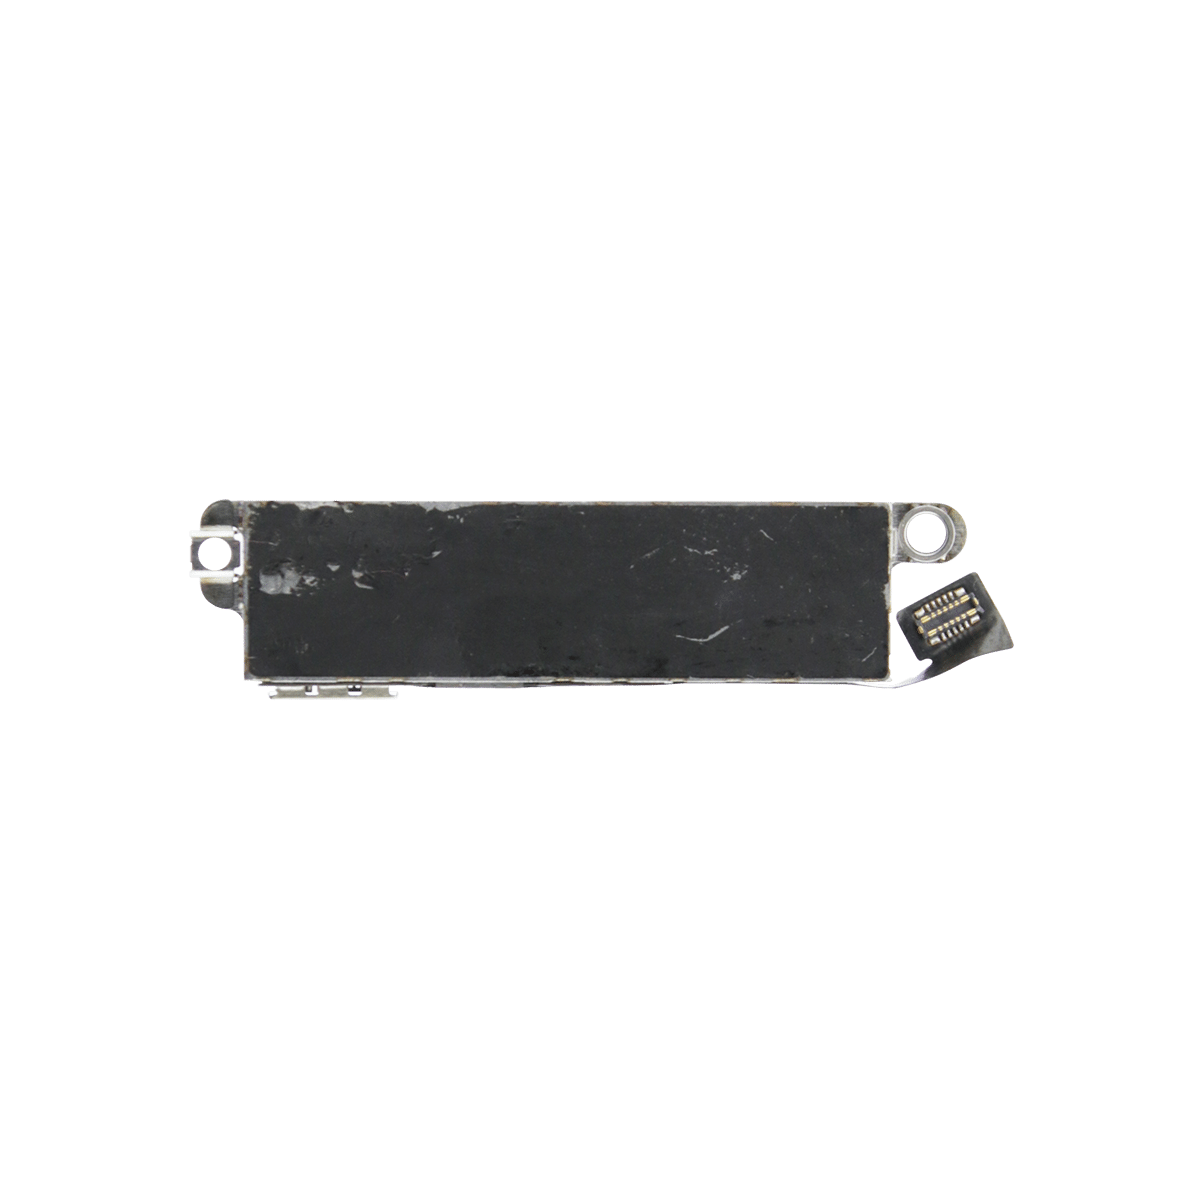 iPhone 8 Vibrator (Taptic Engine) Replacement (Premium)